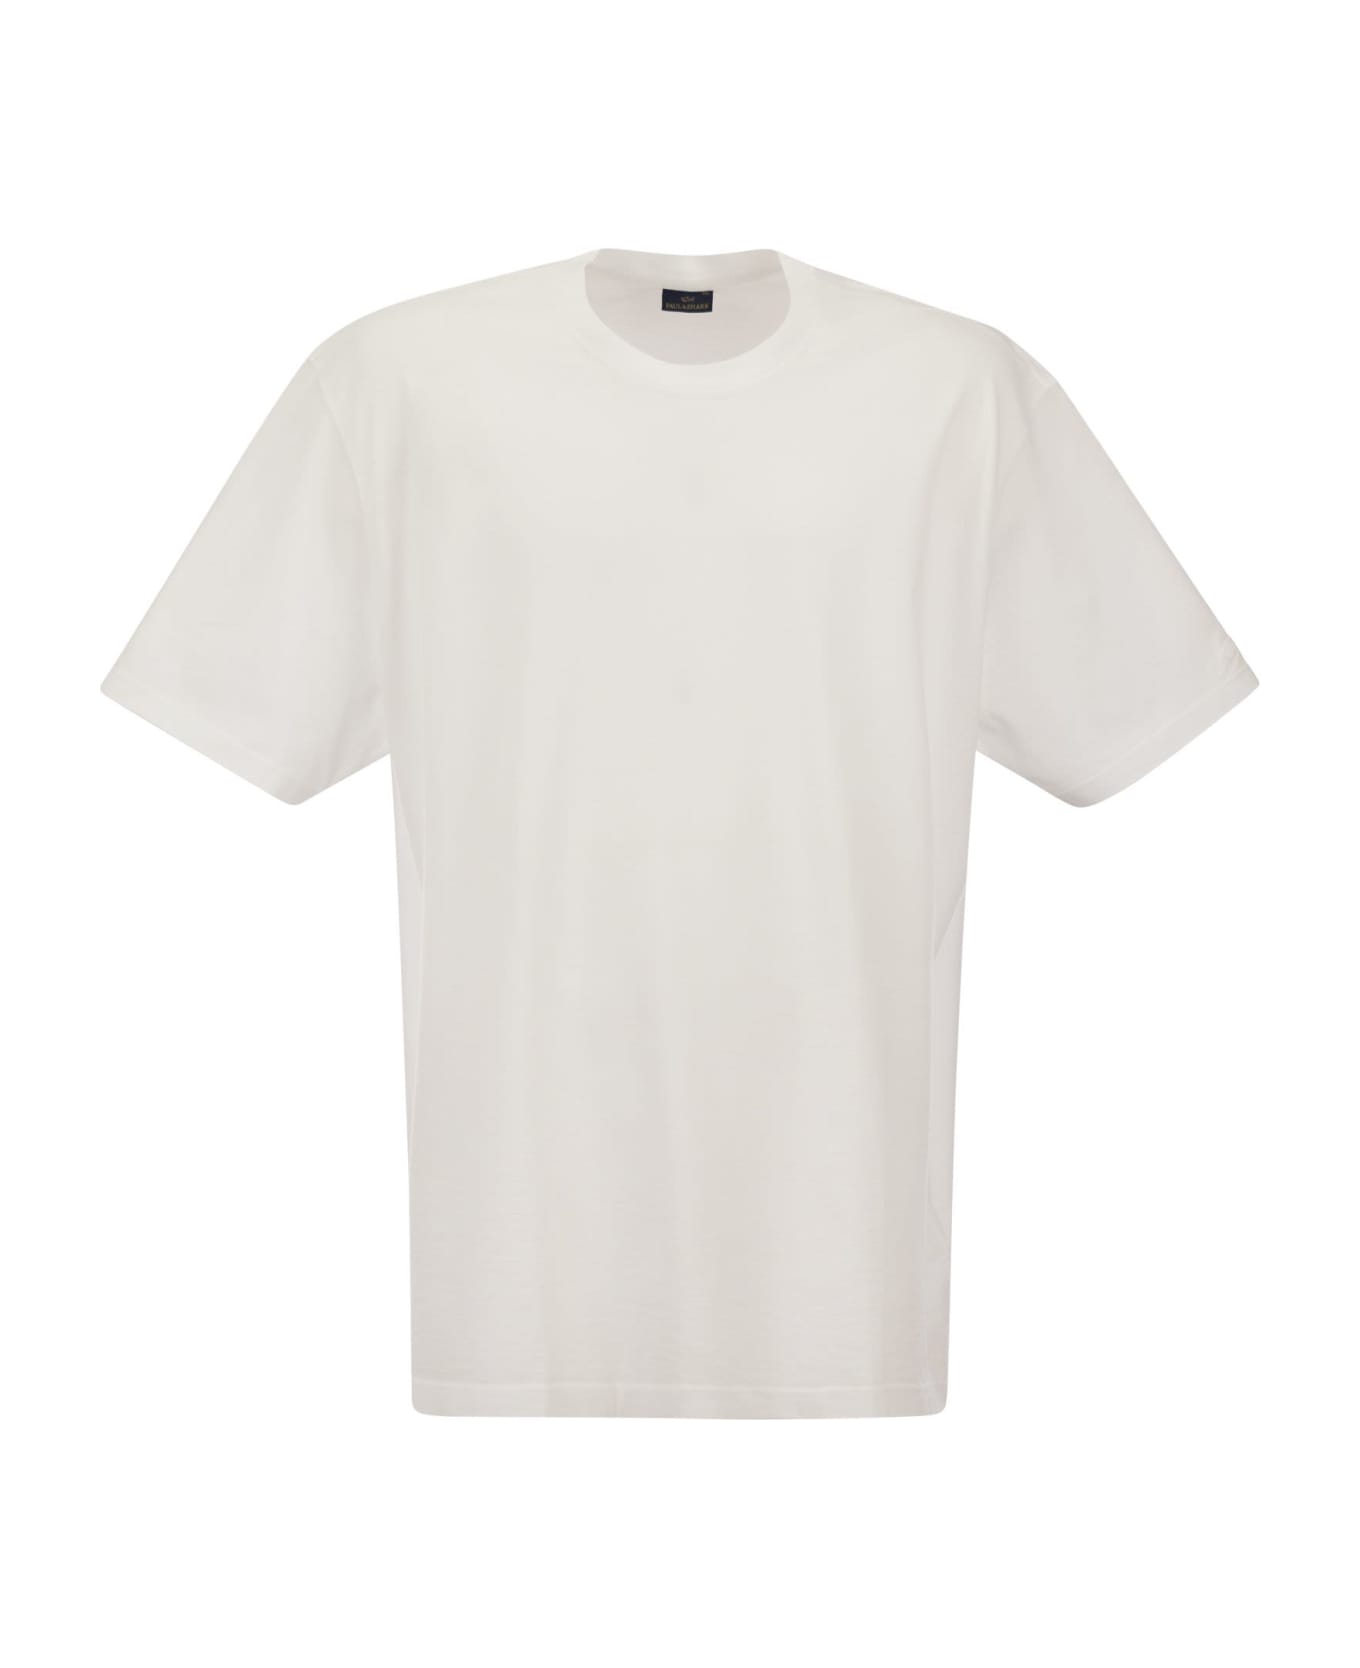 Paul&Shark Garment Dyed Cotton Jersey T-shirt シャツ